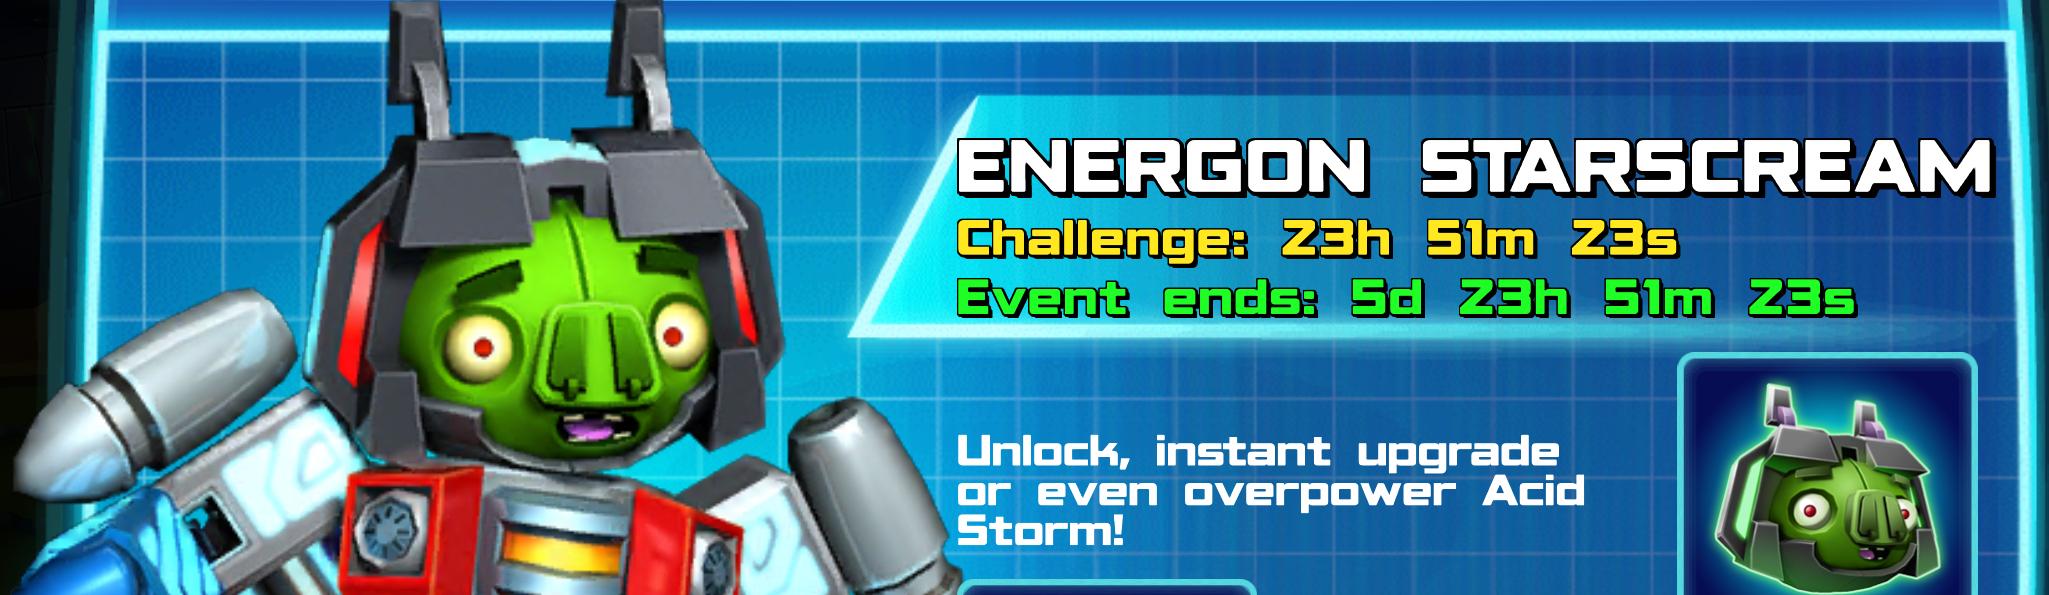 (Part of) The event banner for Energon Starscream